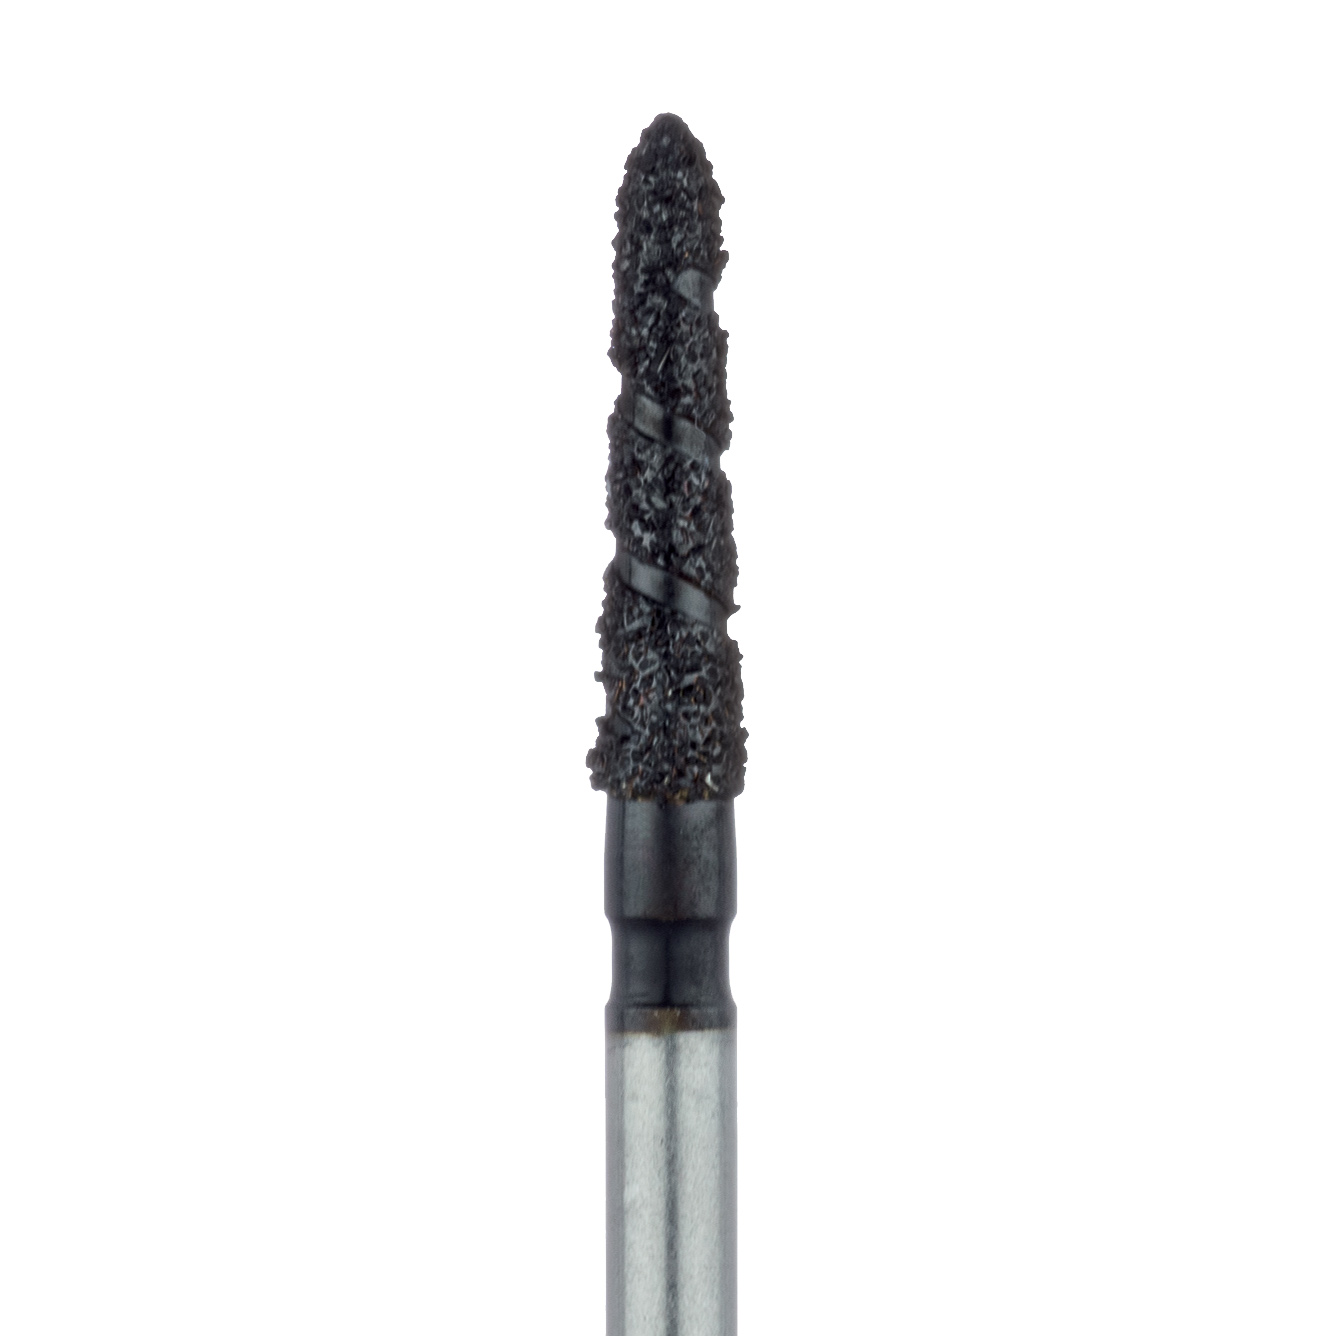 B878-018-FG Black Cobra Diamond Bur, Modified Chamfer, 1.8mm Ø, Super Coarse, FG